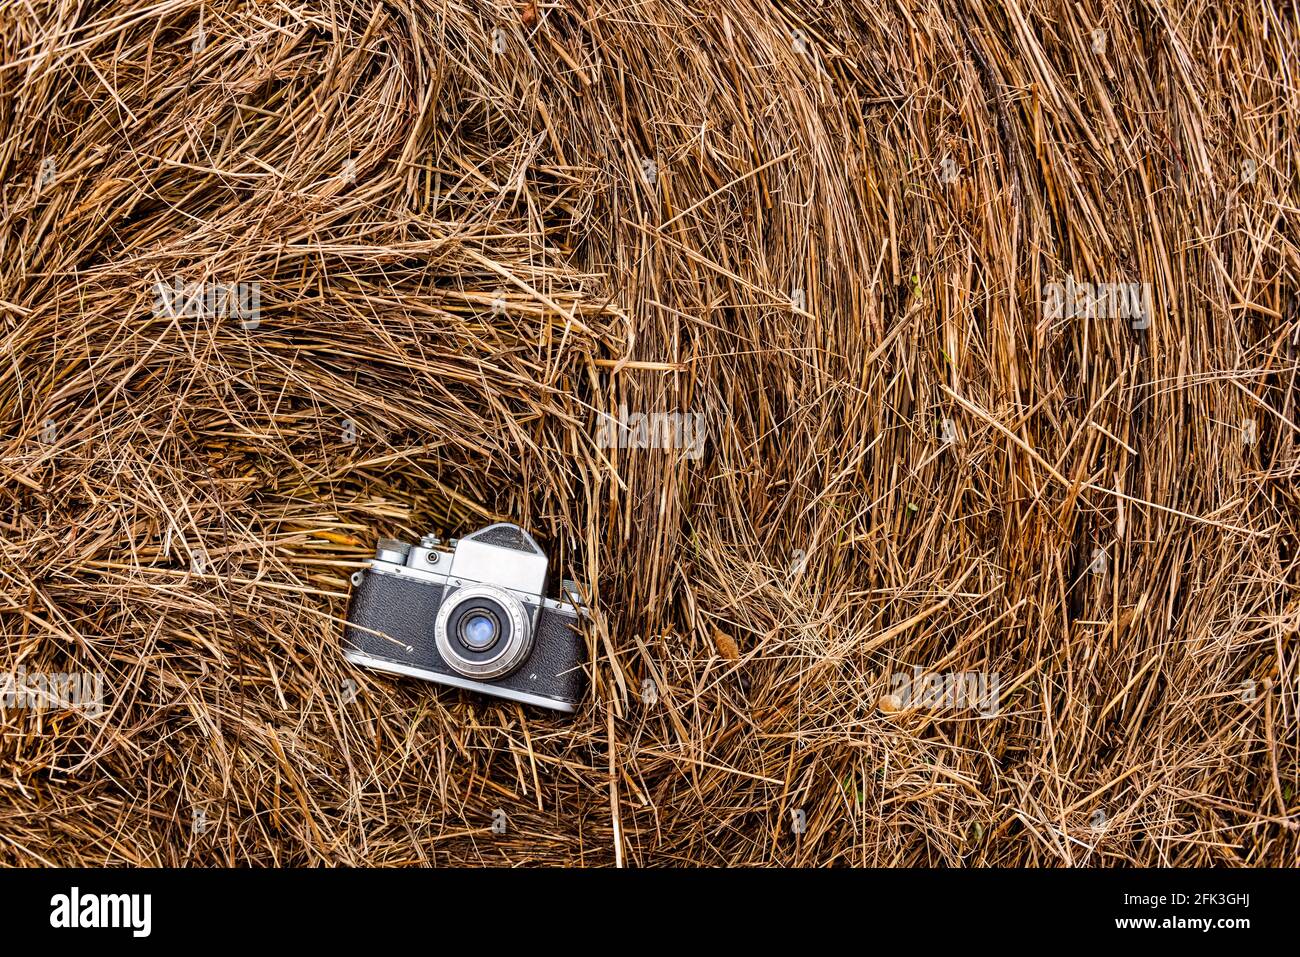 vecchia telecamera a film su una pila di fieno, sfondo naturale. foto orizzontale dall'alto Foto Stock